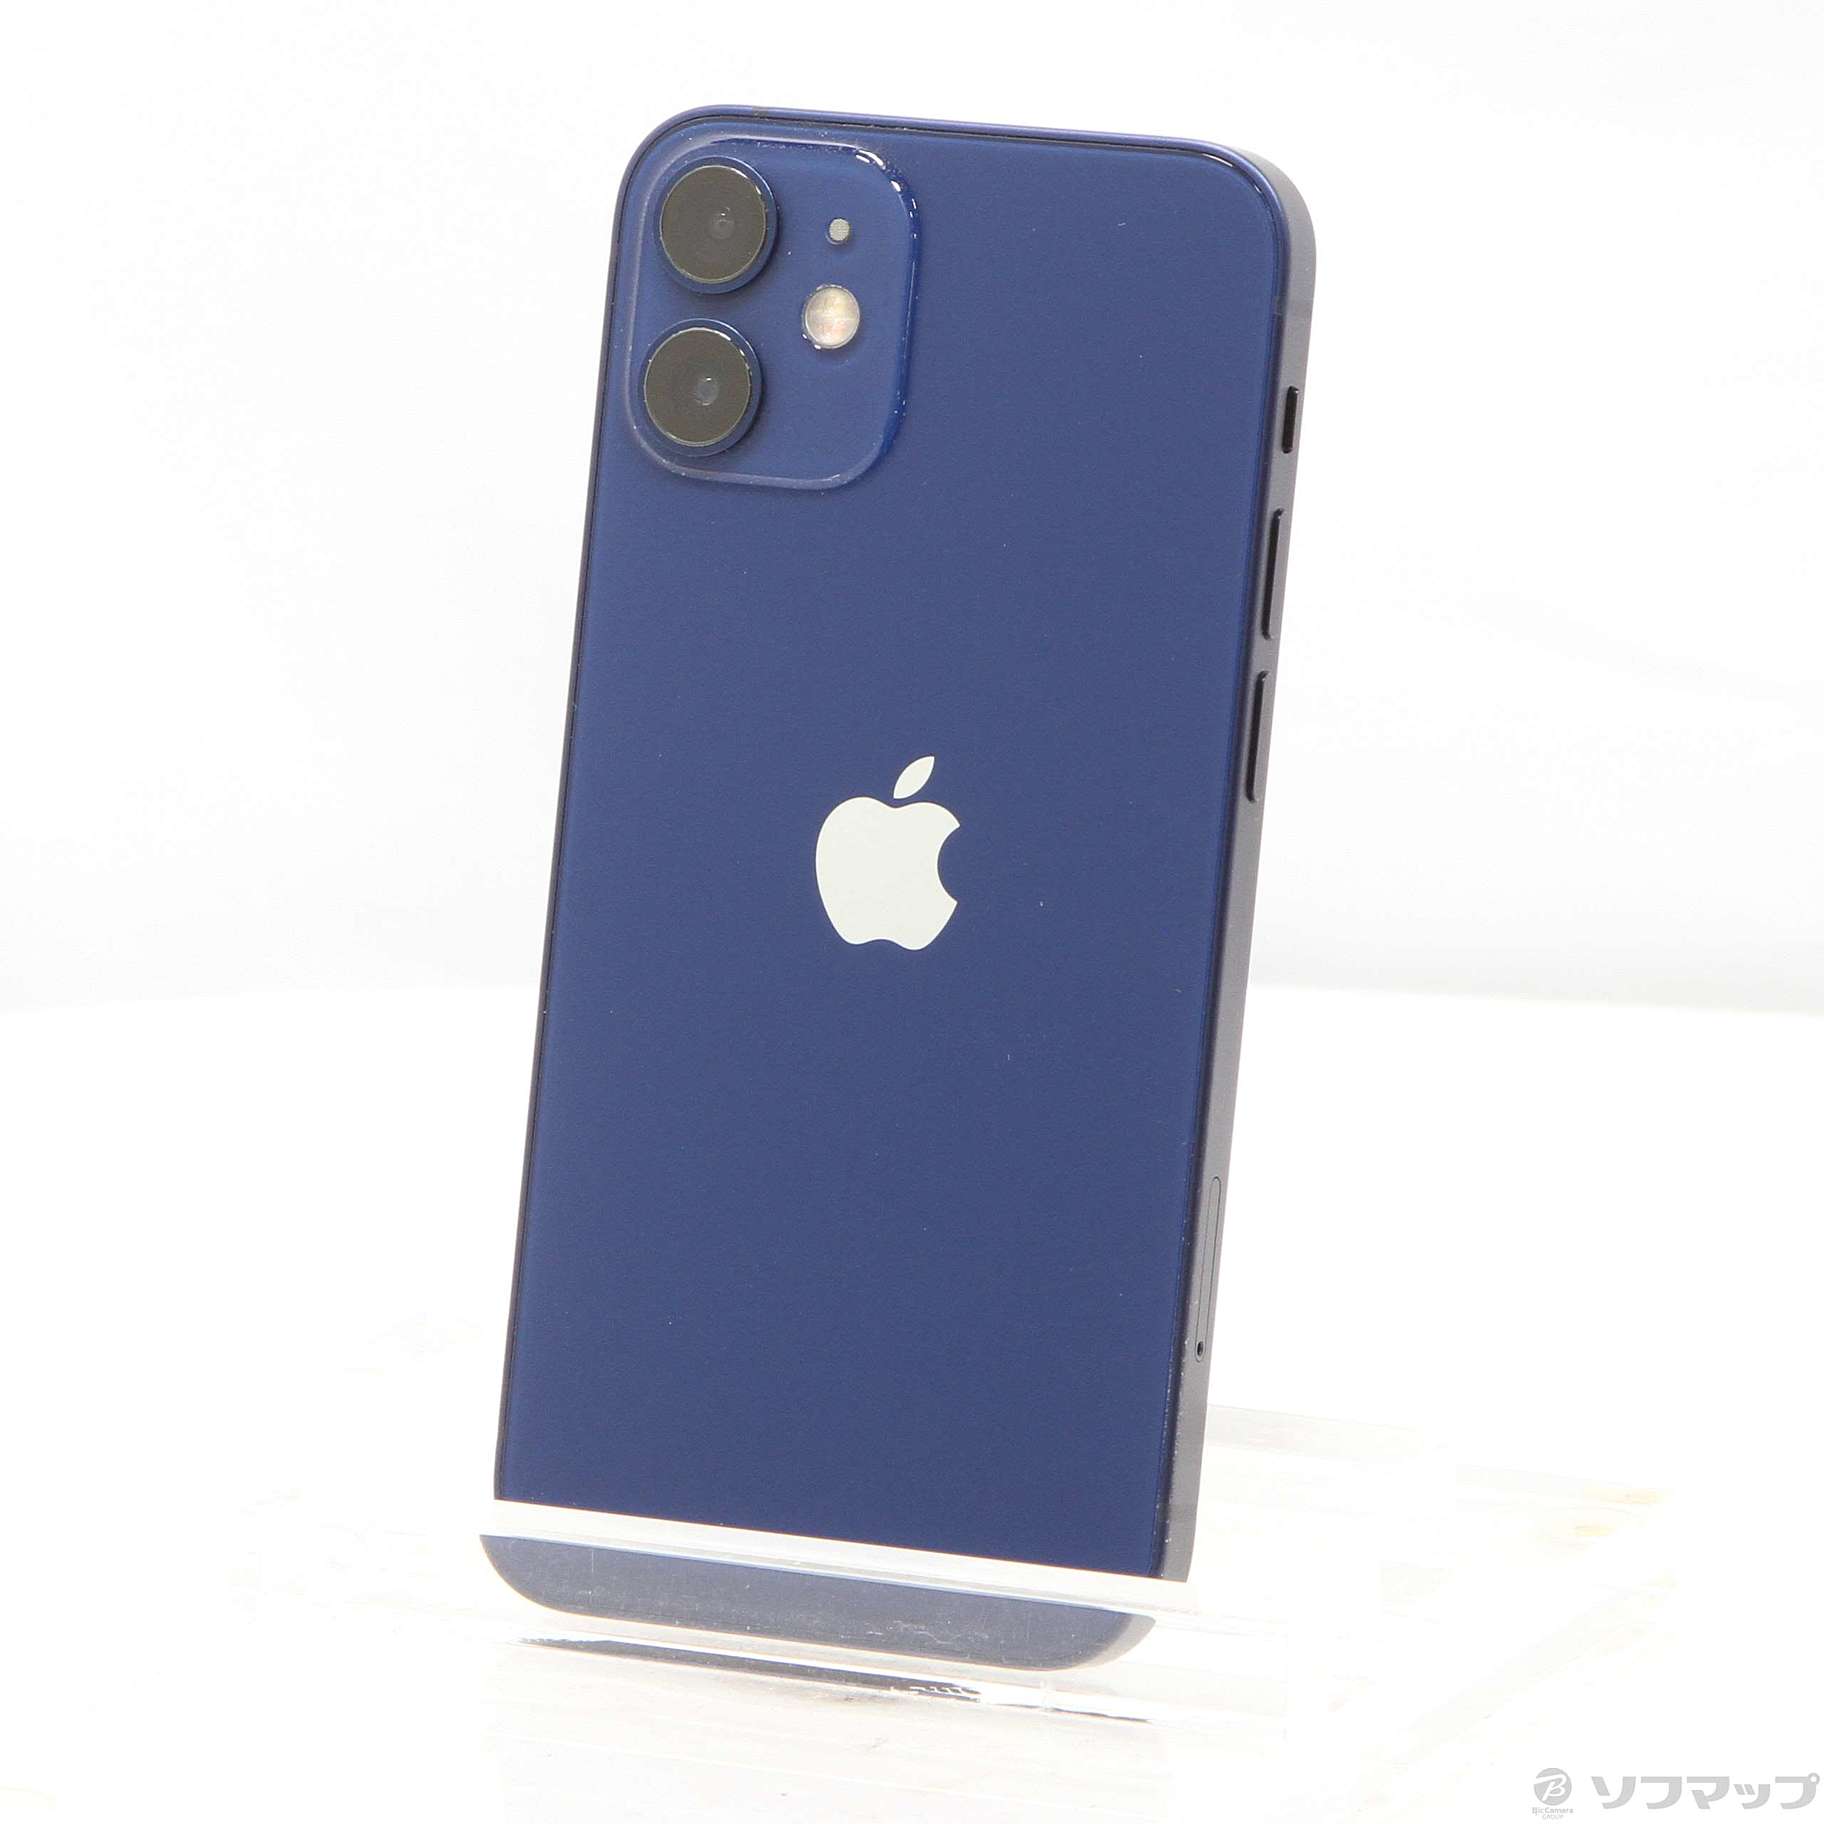 新品 iPhone 12 mini 128GB ブルー SIMフリー - www.sorbillomenu.com